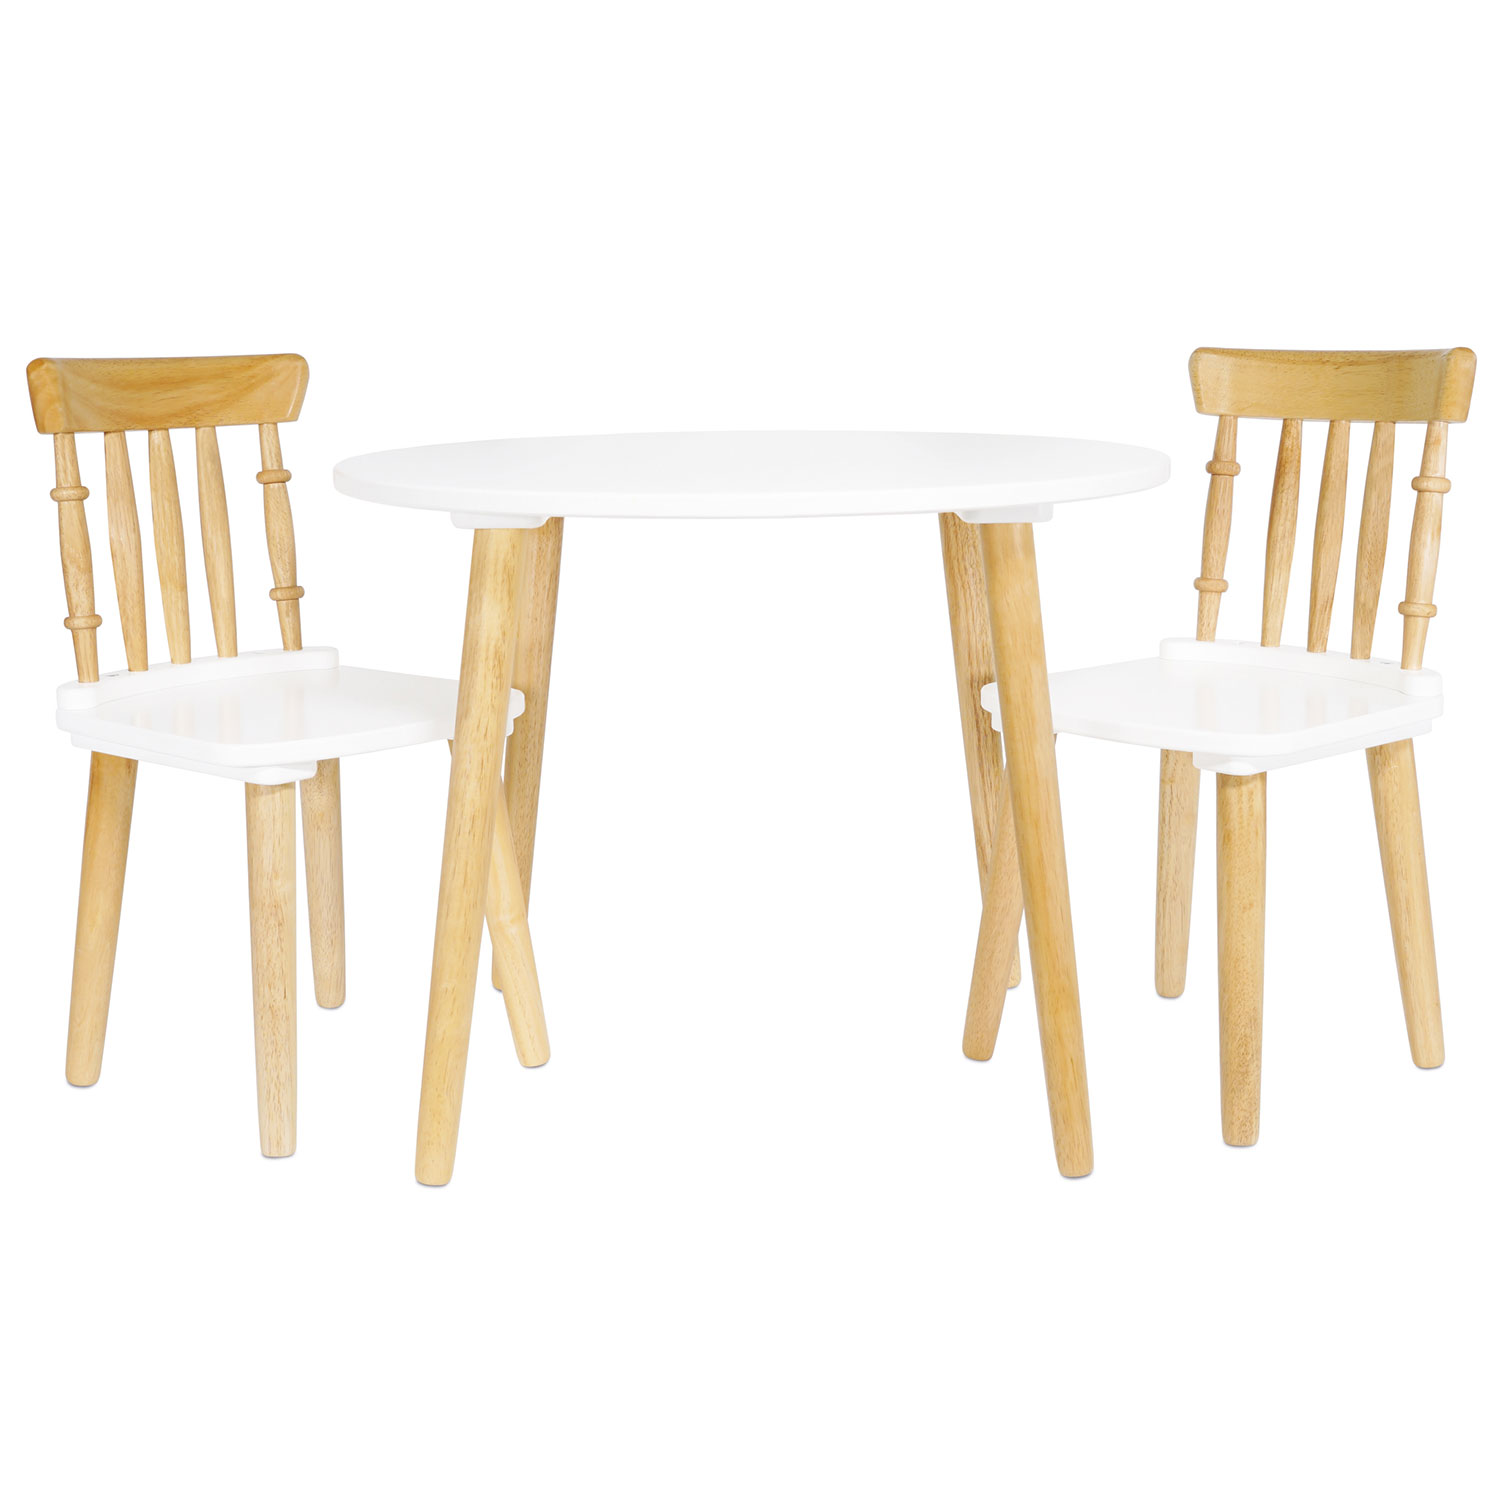 Tisch & zwei Stühle/Table & Two Chairs (Kindermöbel)